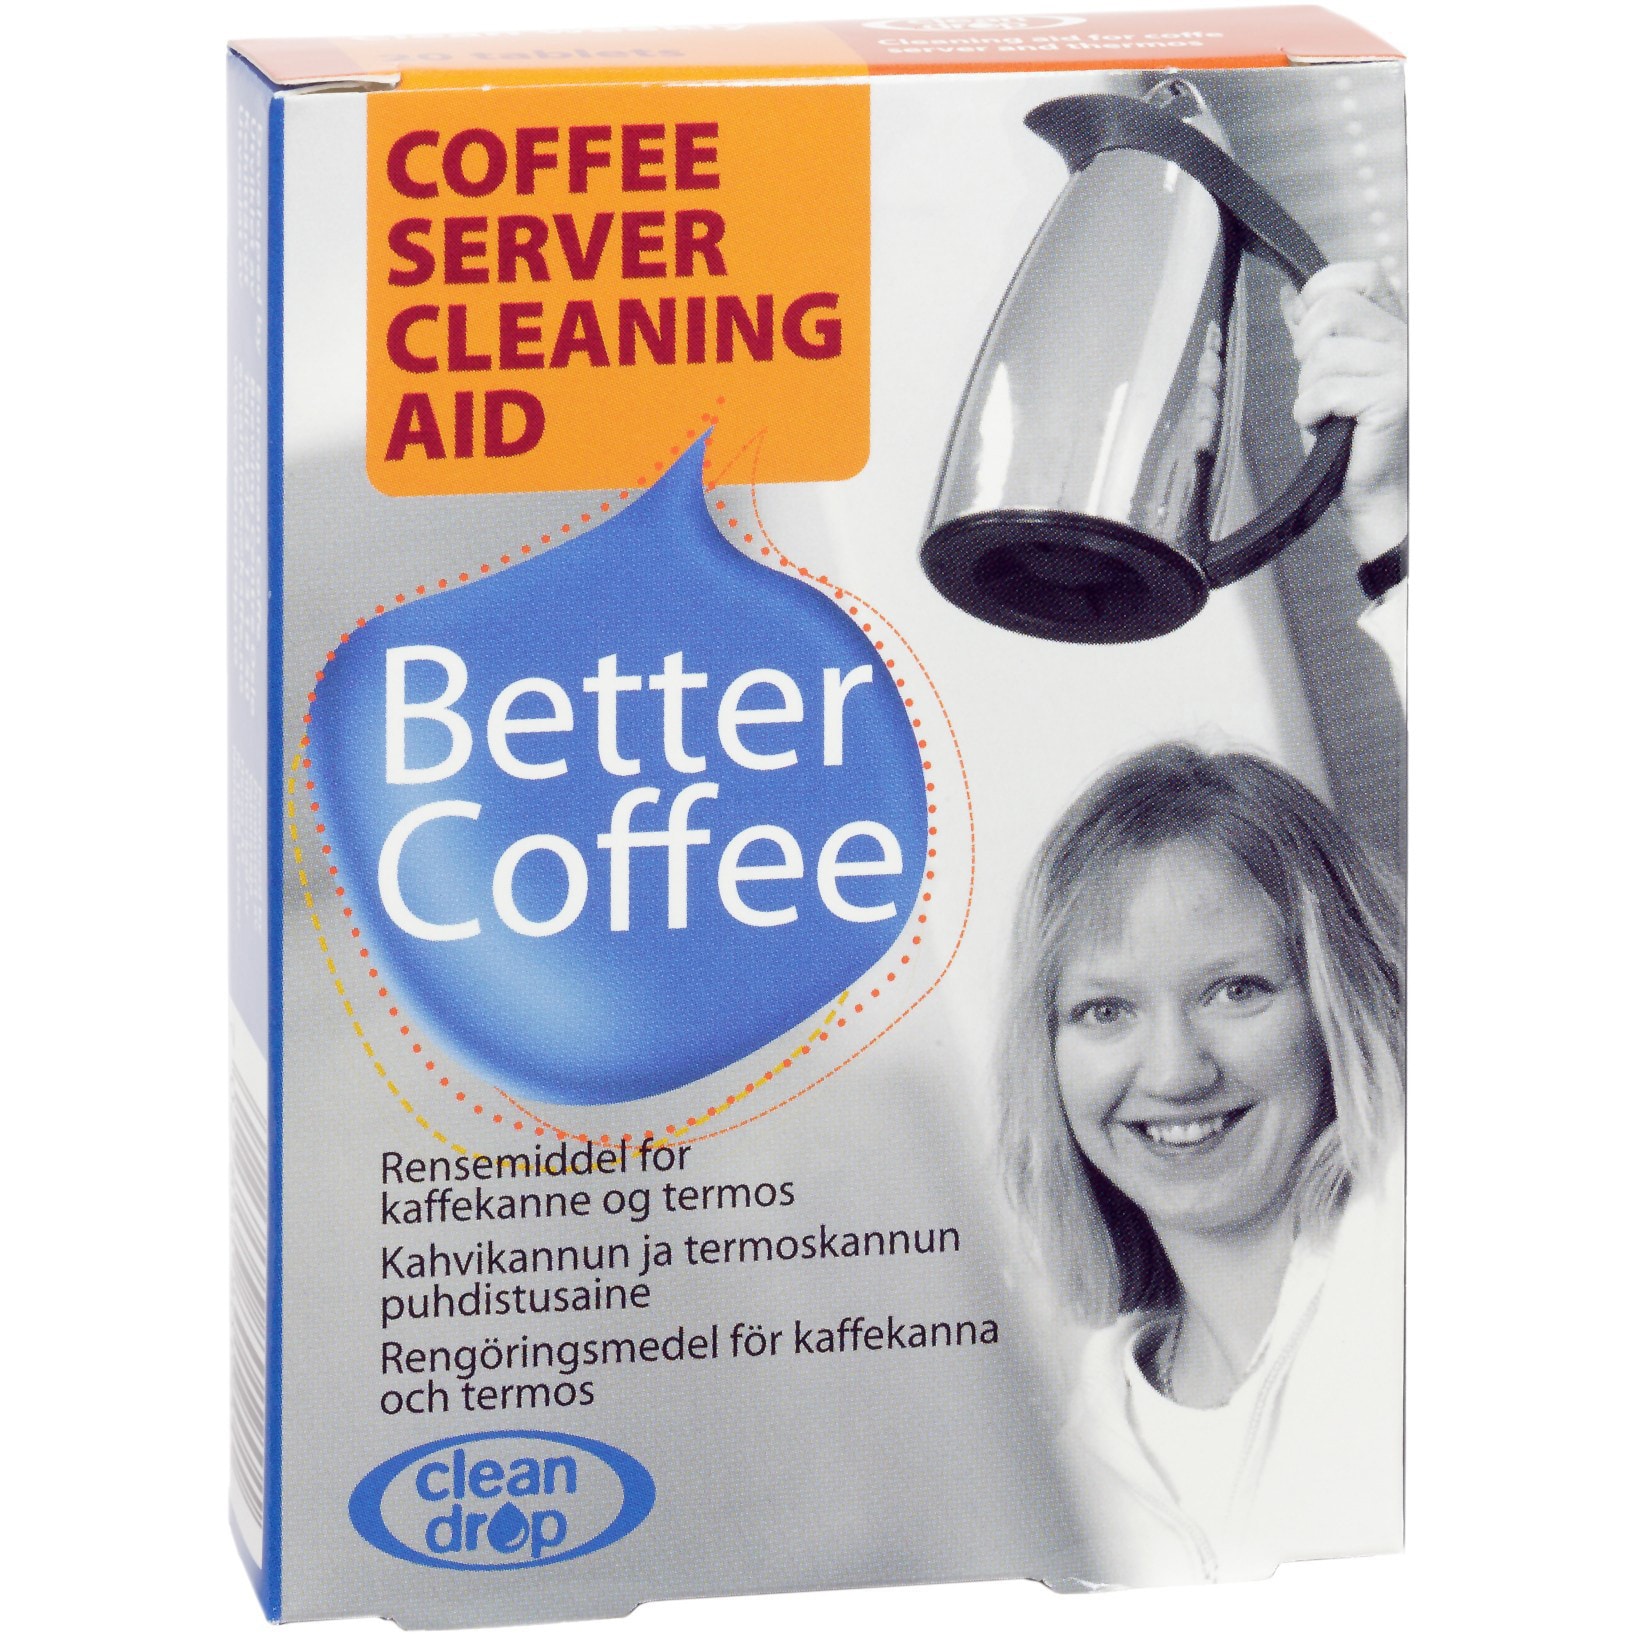 Clean Drop renser til kaffekande thumbnail